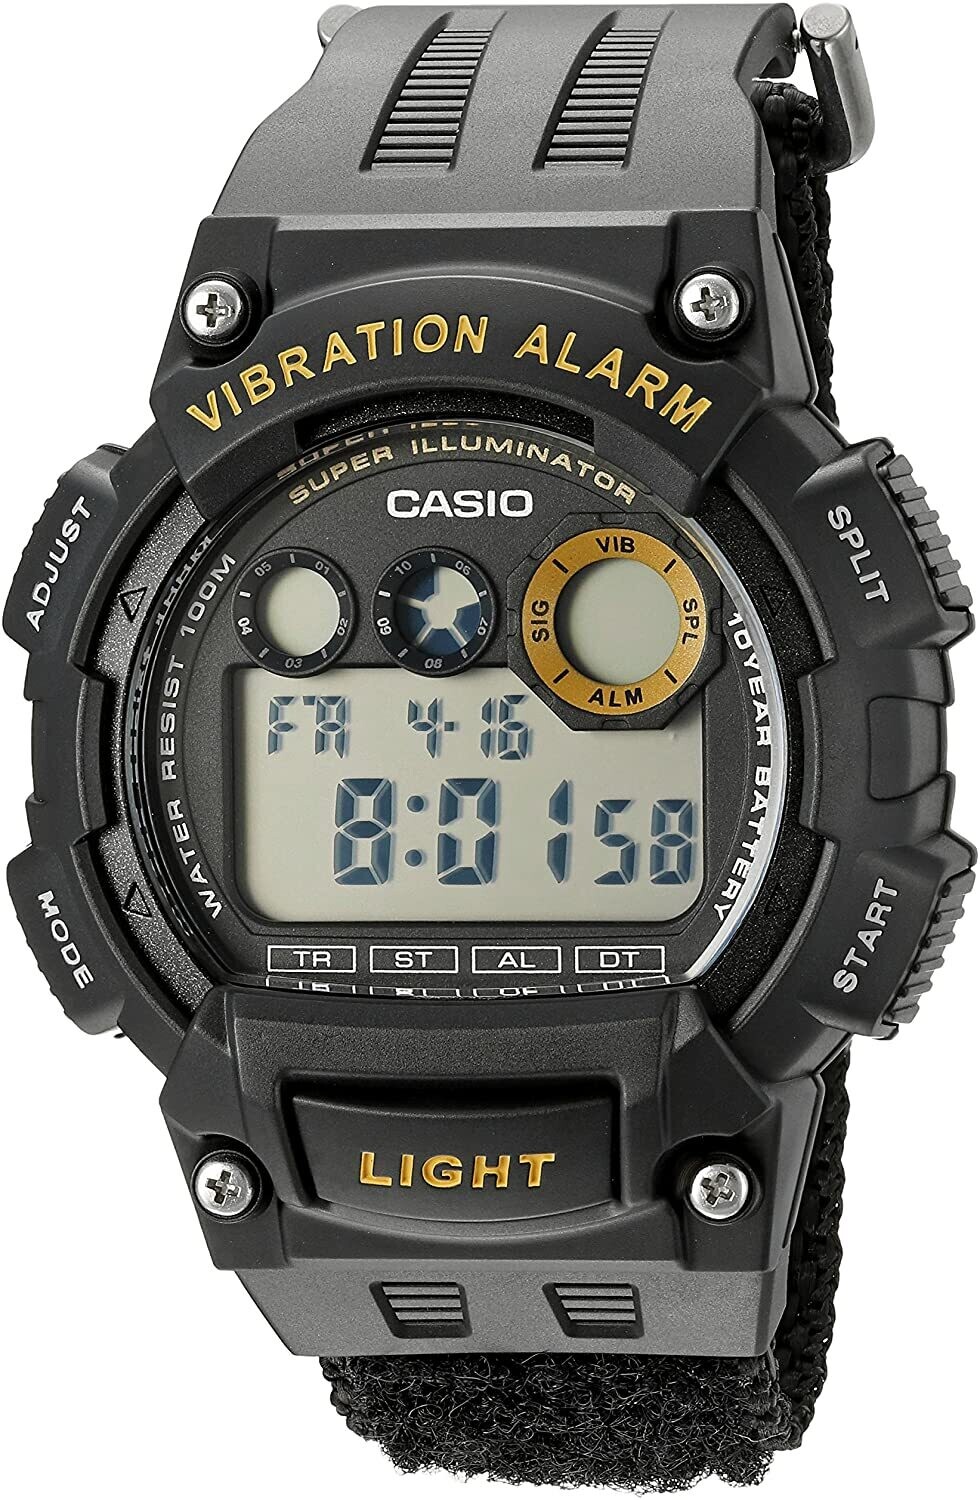 Reloj deportivo hombre Casio W-735HB-1AV Alarma Vibración Superiluminador 10 años batería 100m Water Resist